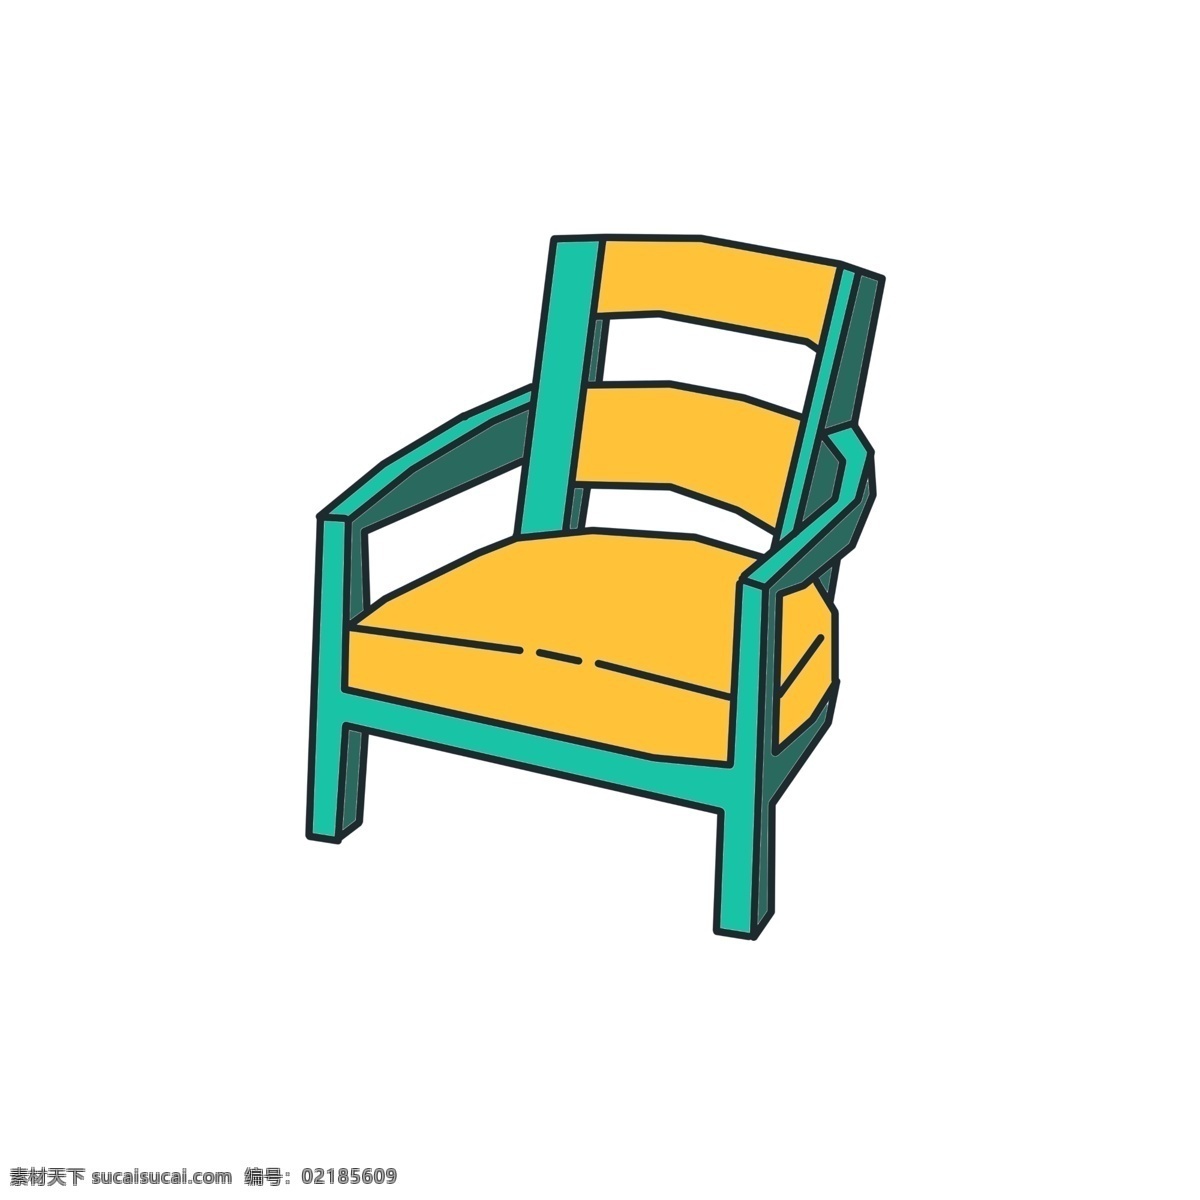 立体 椅子 装饰 插画 立体椅子 精美椅子 卡通椅子 椅子装饰 椅子插画 木头的椅子 家具的椅子